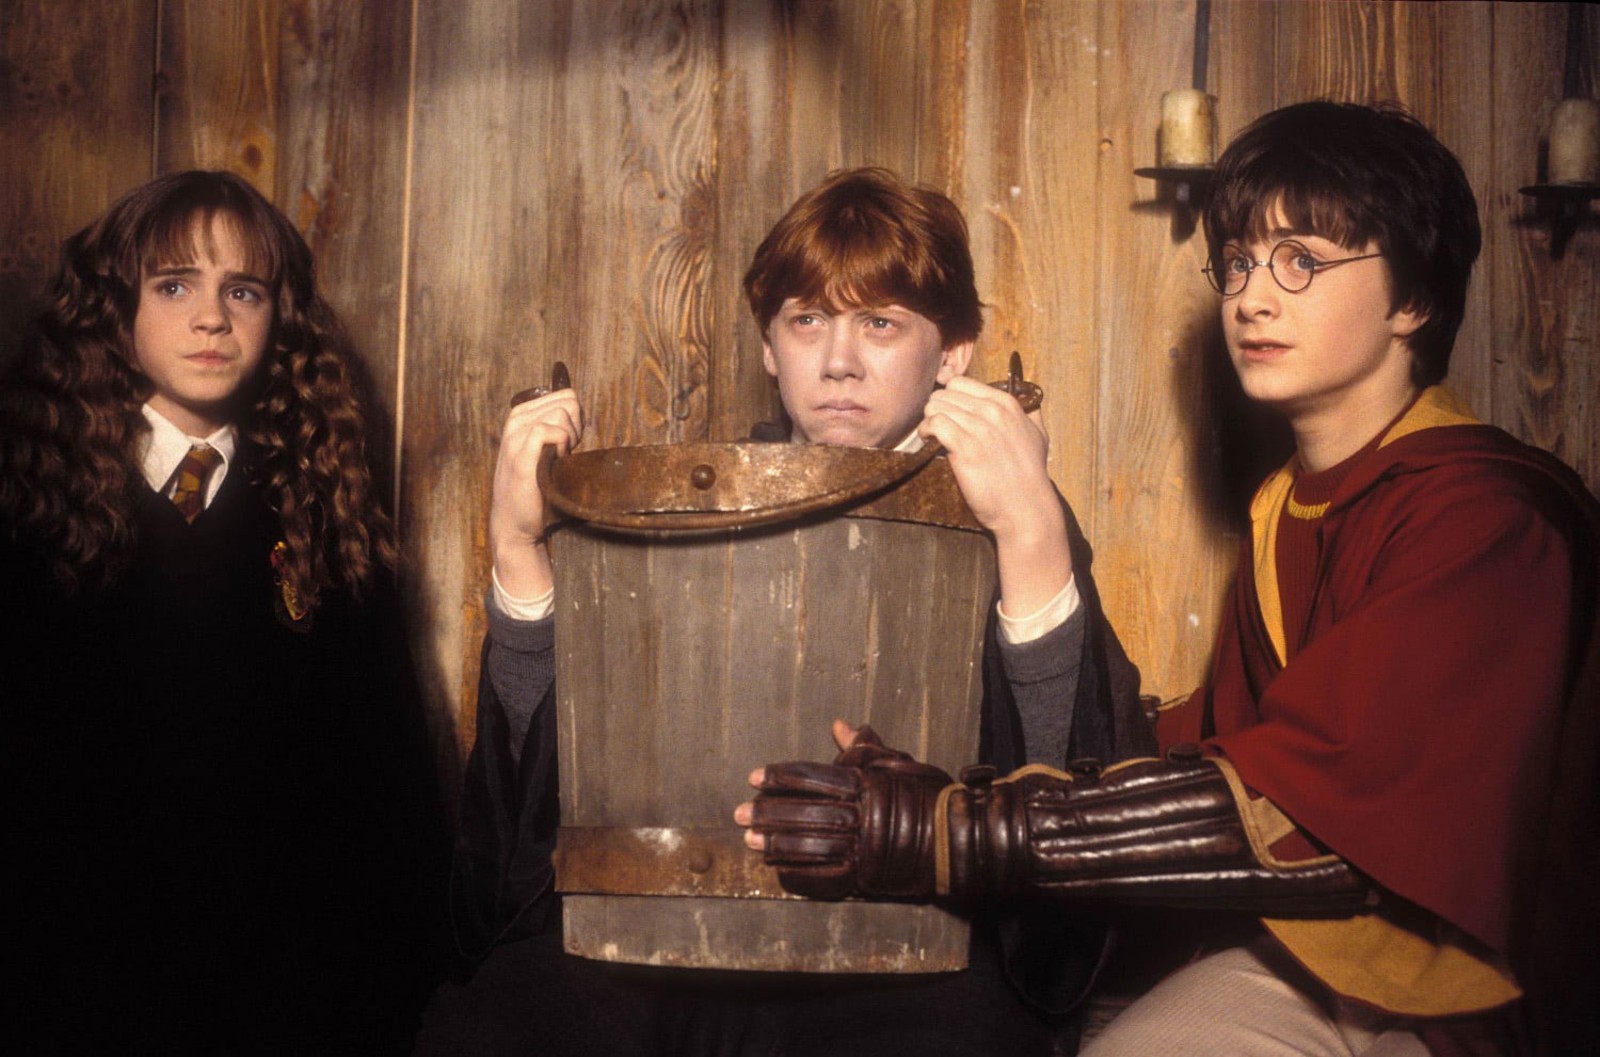 Dans la saga Harry Potter, Ron Weasley est frappé par le sort crache-limace. Heureusement, les limaces vomies par le sorcier n'étaient pas infestées par des parasites mortels. © Harry Potter, Universal Studio